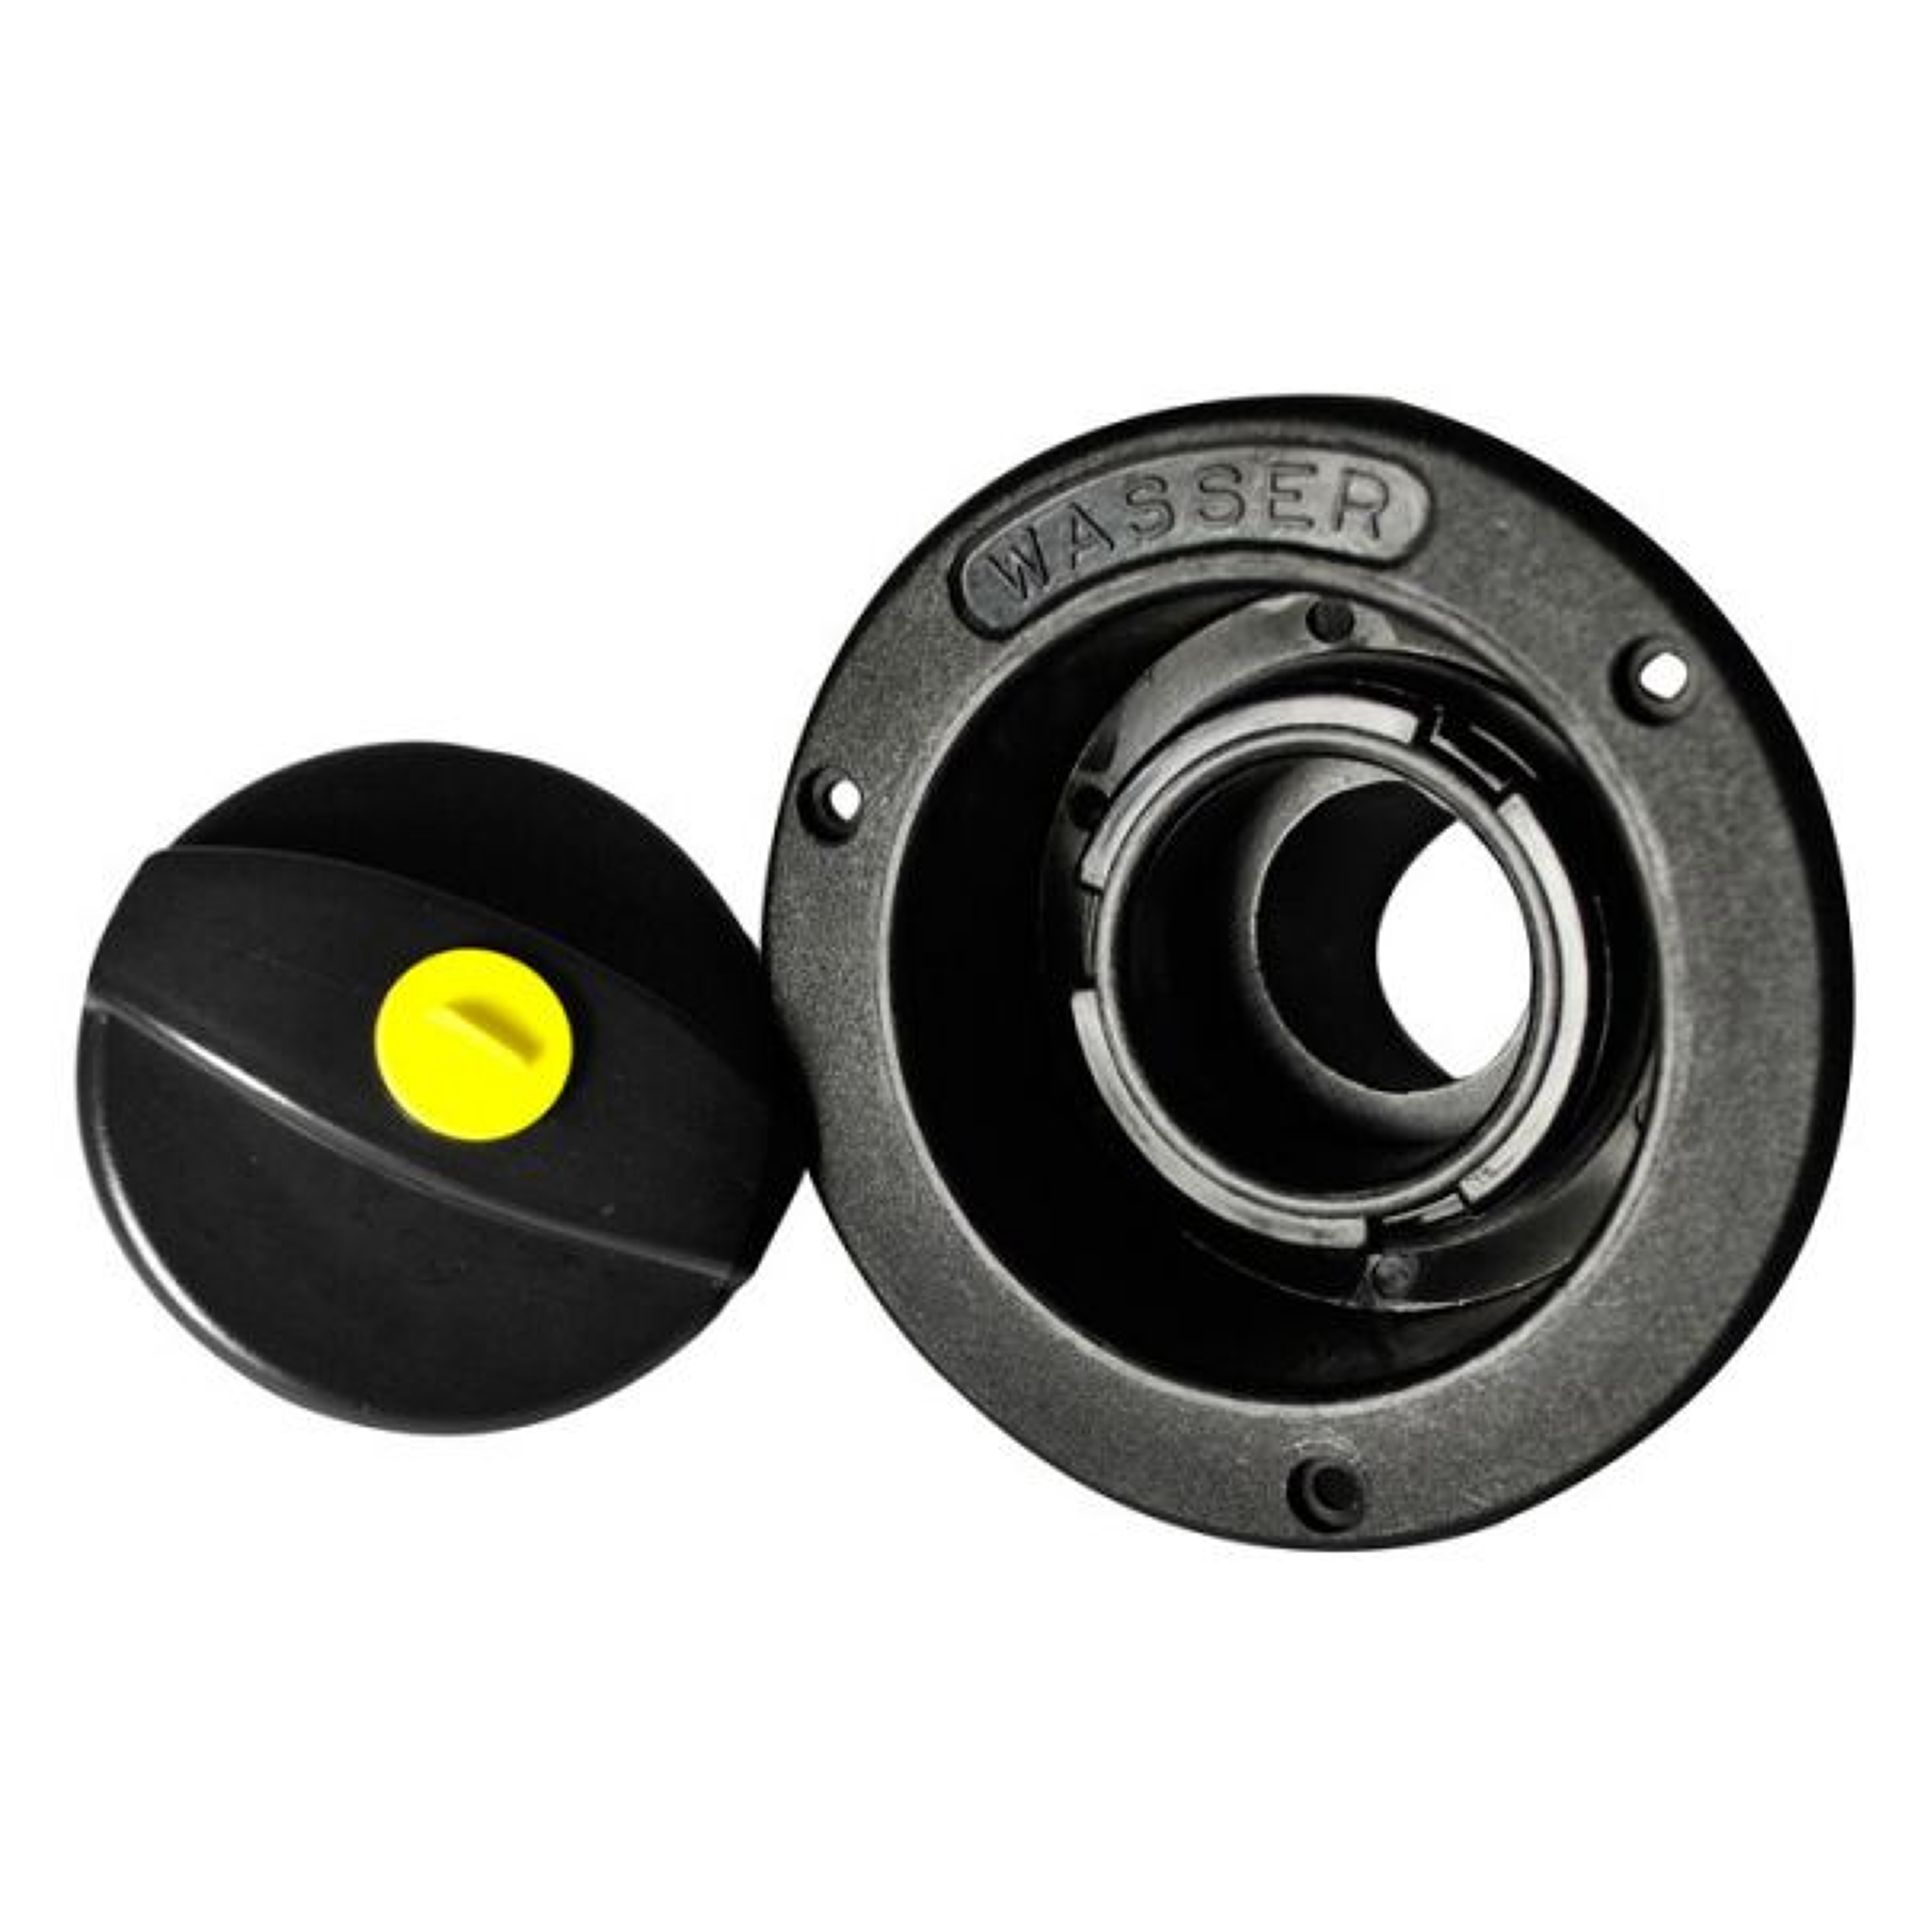 Plnící hrdlo FF - system 40 mm s krytem, černá